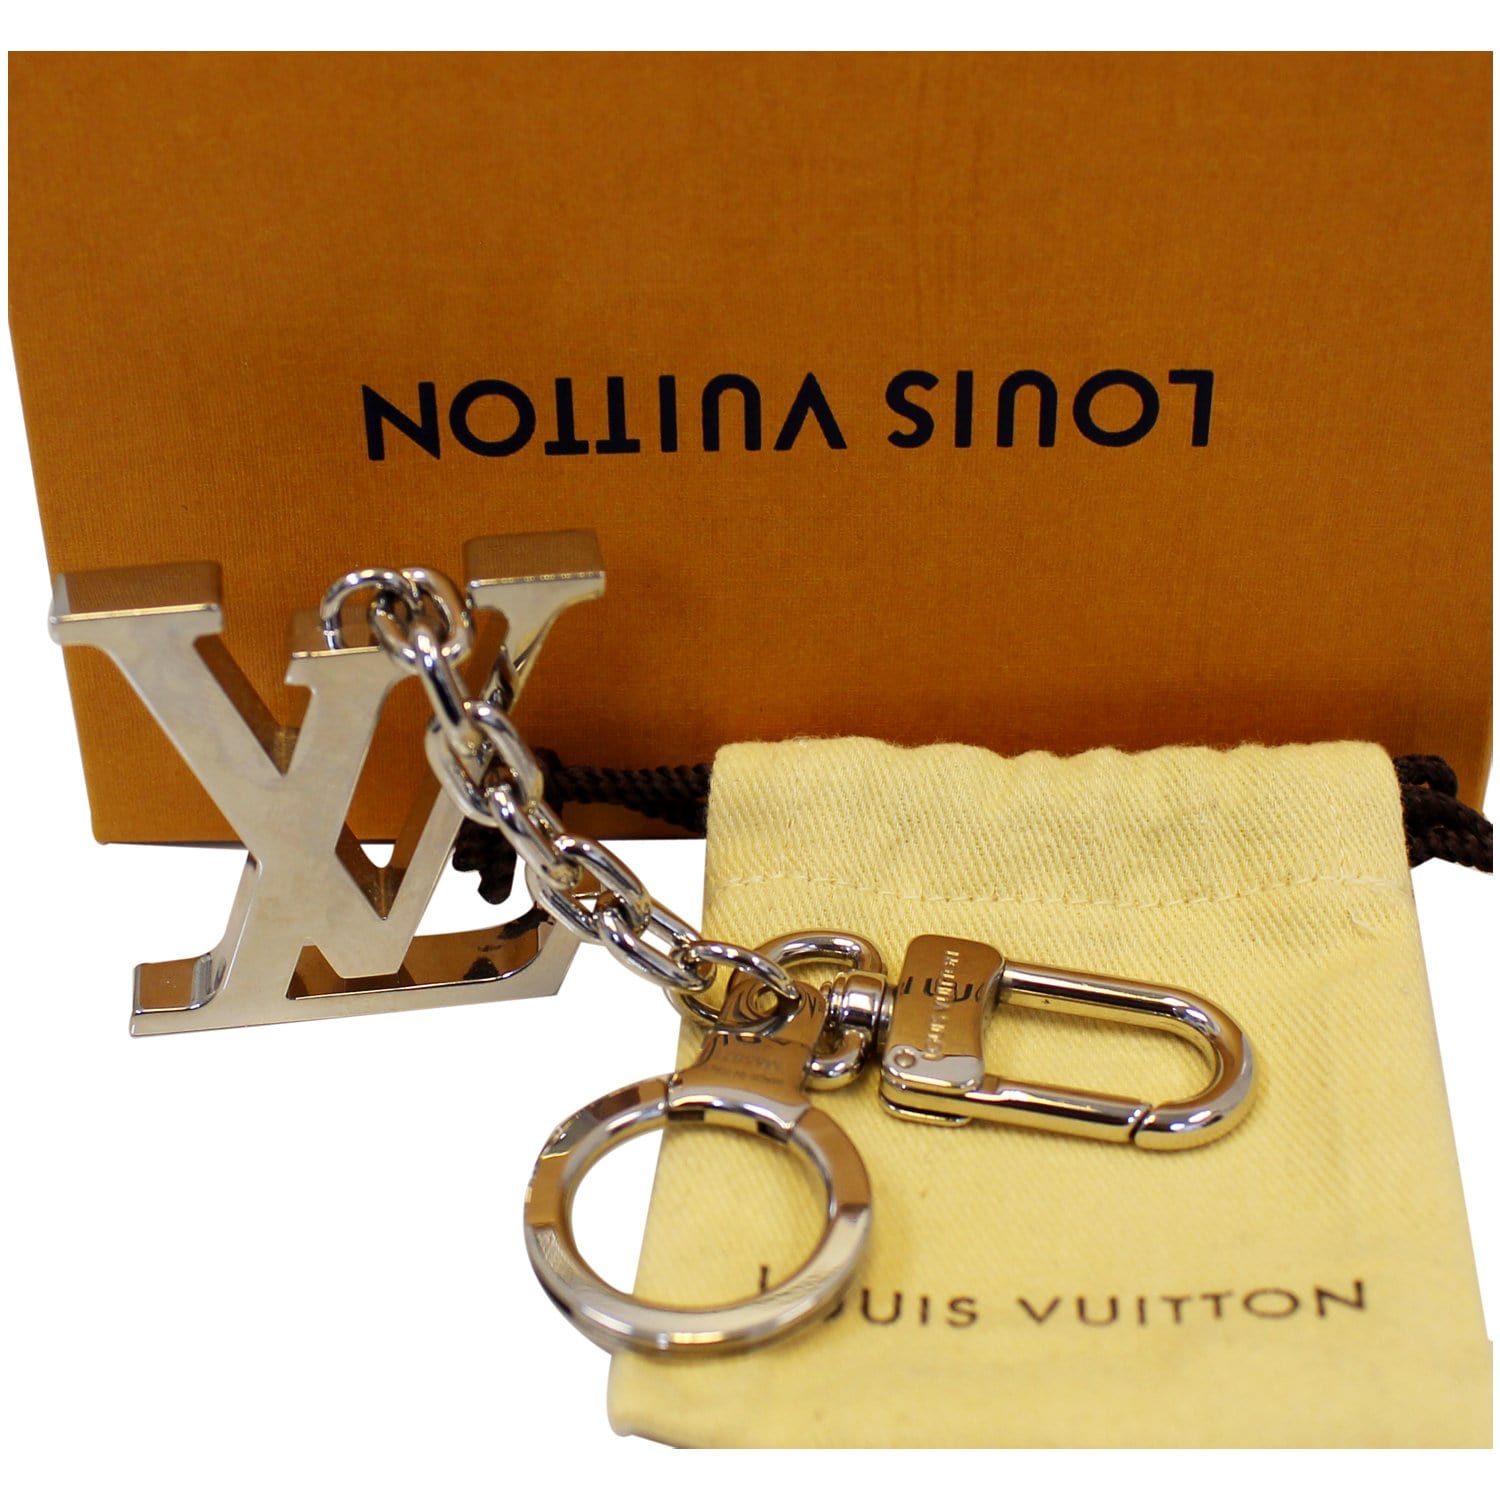 LOUIS VUITTON LV Facettes Bag Charm Key Holder Silver